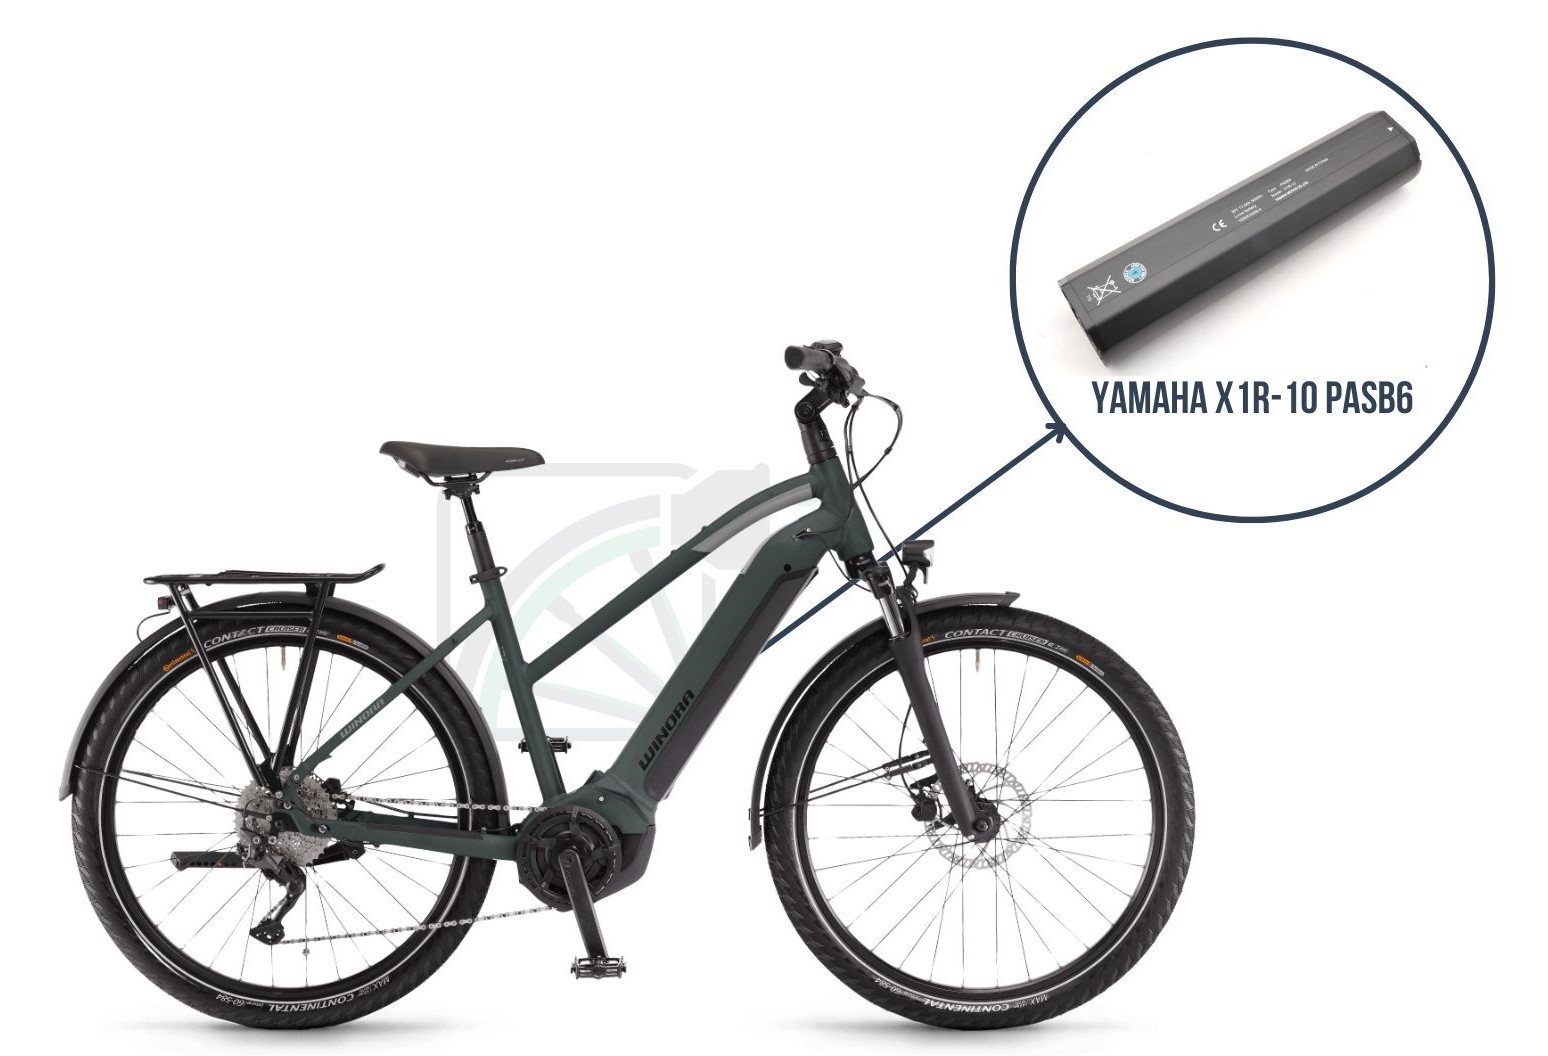 Winor Yucatan iN7f med fremhævelse af, hvilken batteri denne cykel bruger. Det er nemlig Yamaha X1R-10 PASB6.